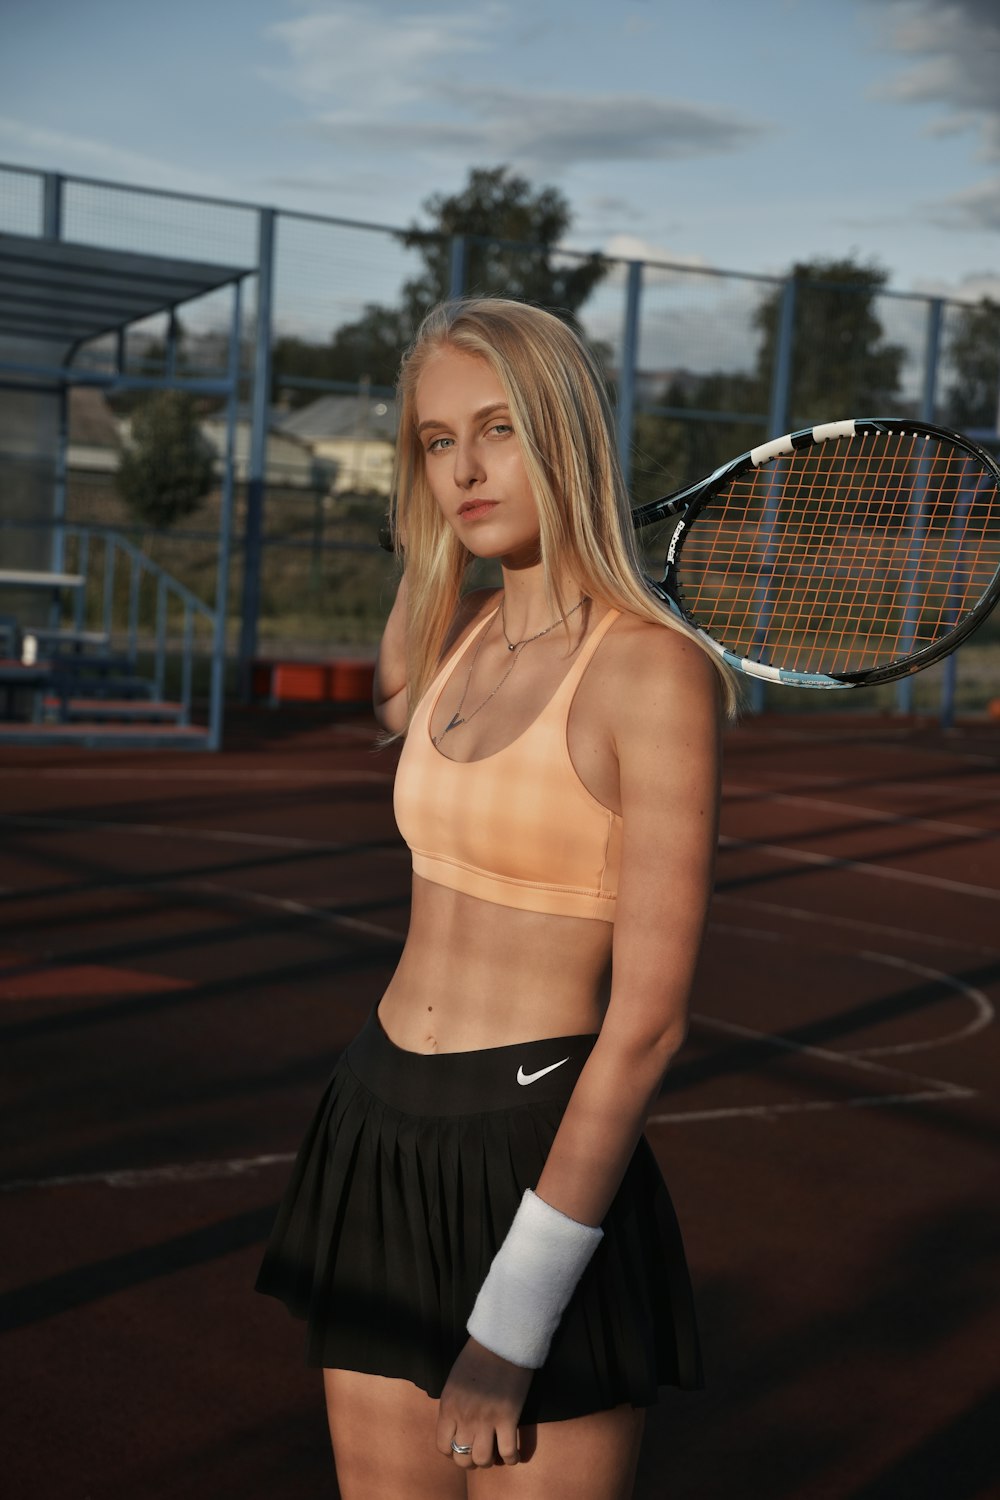 Una mujer sosteniendo una raqueta de tenis encima de una cancha de tenis